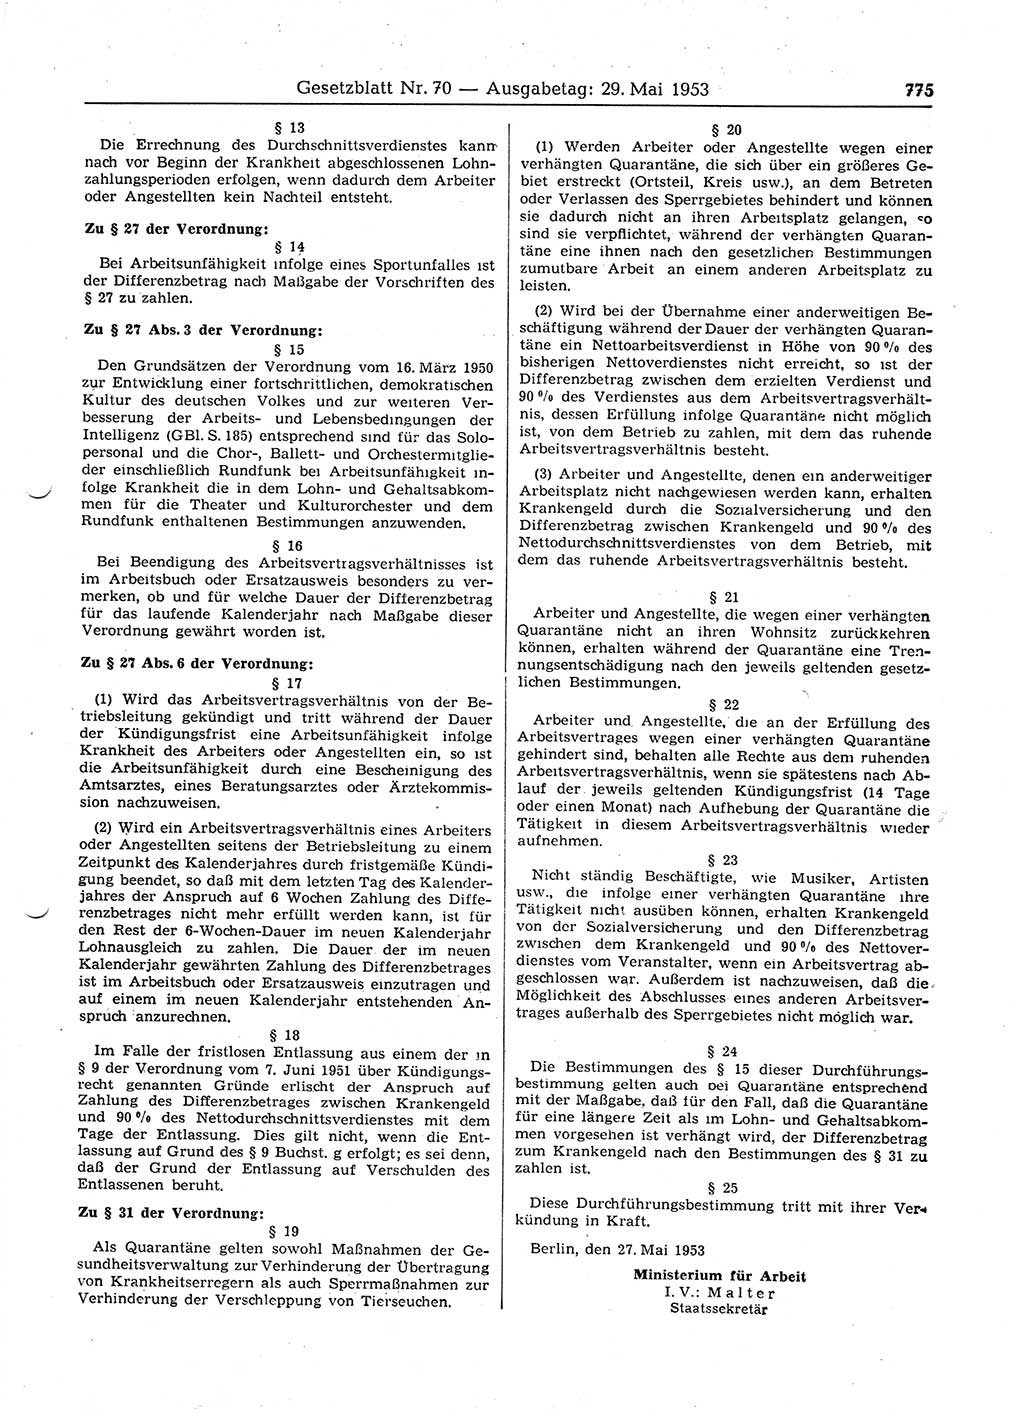 Gesetzblatt (GBl.) der Deutschen Demokratischen Republik (DDR) 1953, Seite 775 (GBl. DDR 1953, S. 775)